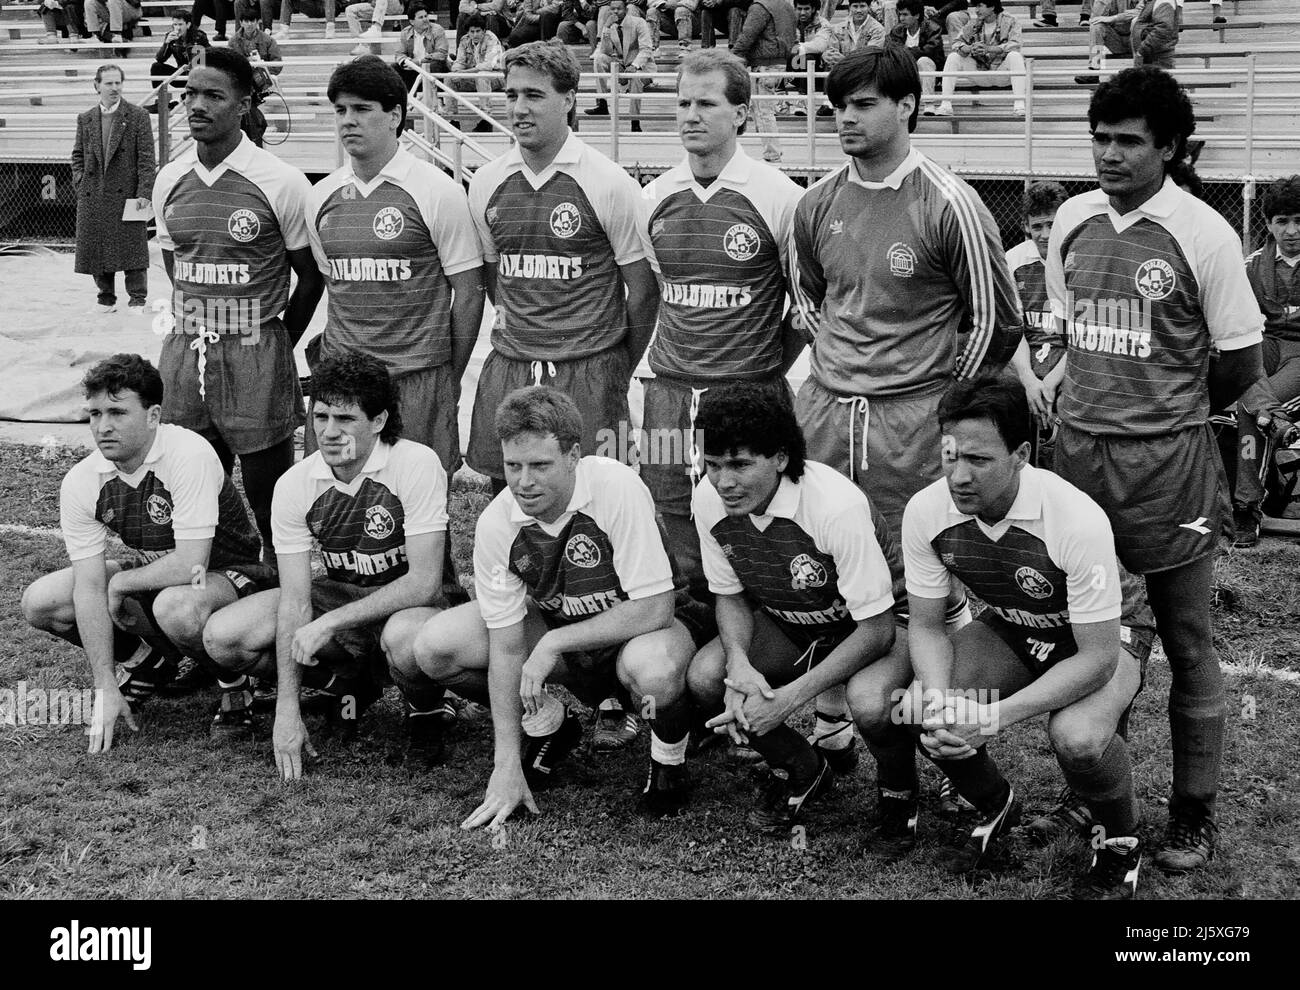 Teamfoto der Fußballmannschaft der Washingtoner Diplomaten aus dem Jahr 1990 Stockfoto